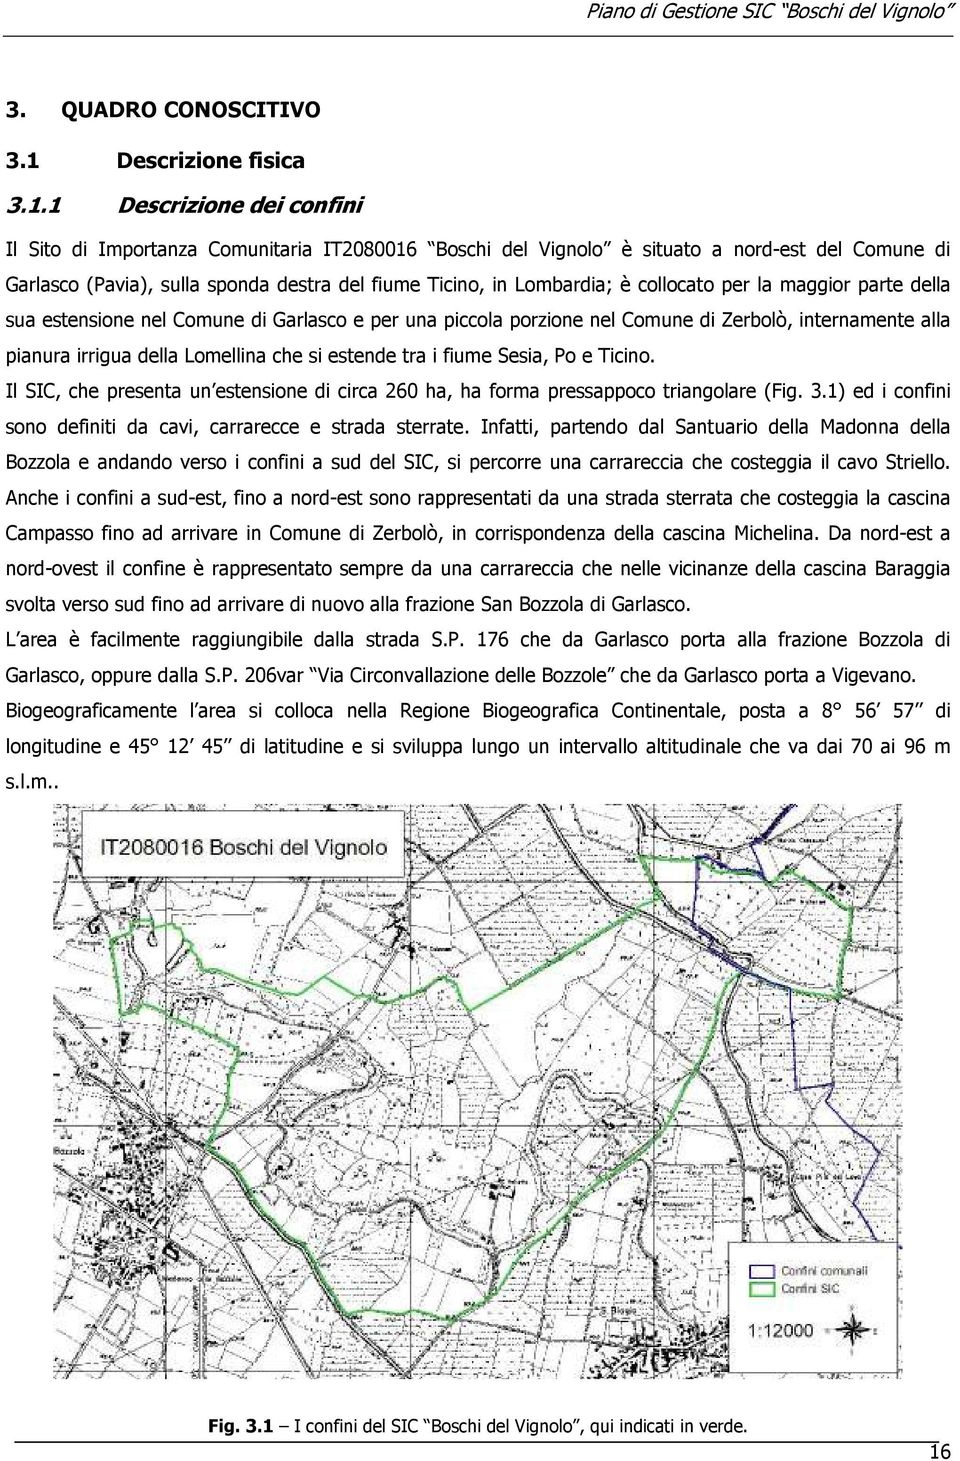 1 Descrizione dei confini Il Sito di Importanza Comunitaria IT2080016 Boschi del Vignolo è situato a nord-est del Comune di Garlasco (Pavia), sulla sponda destra del fiume Ticino, in Lombardia; è